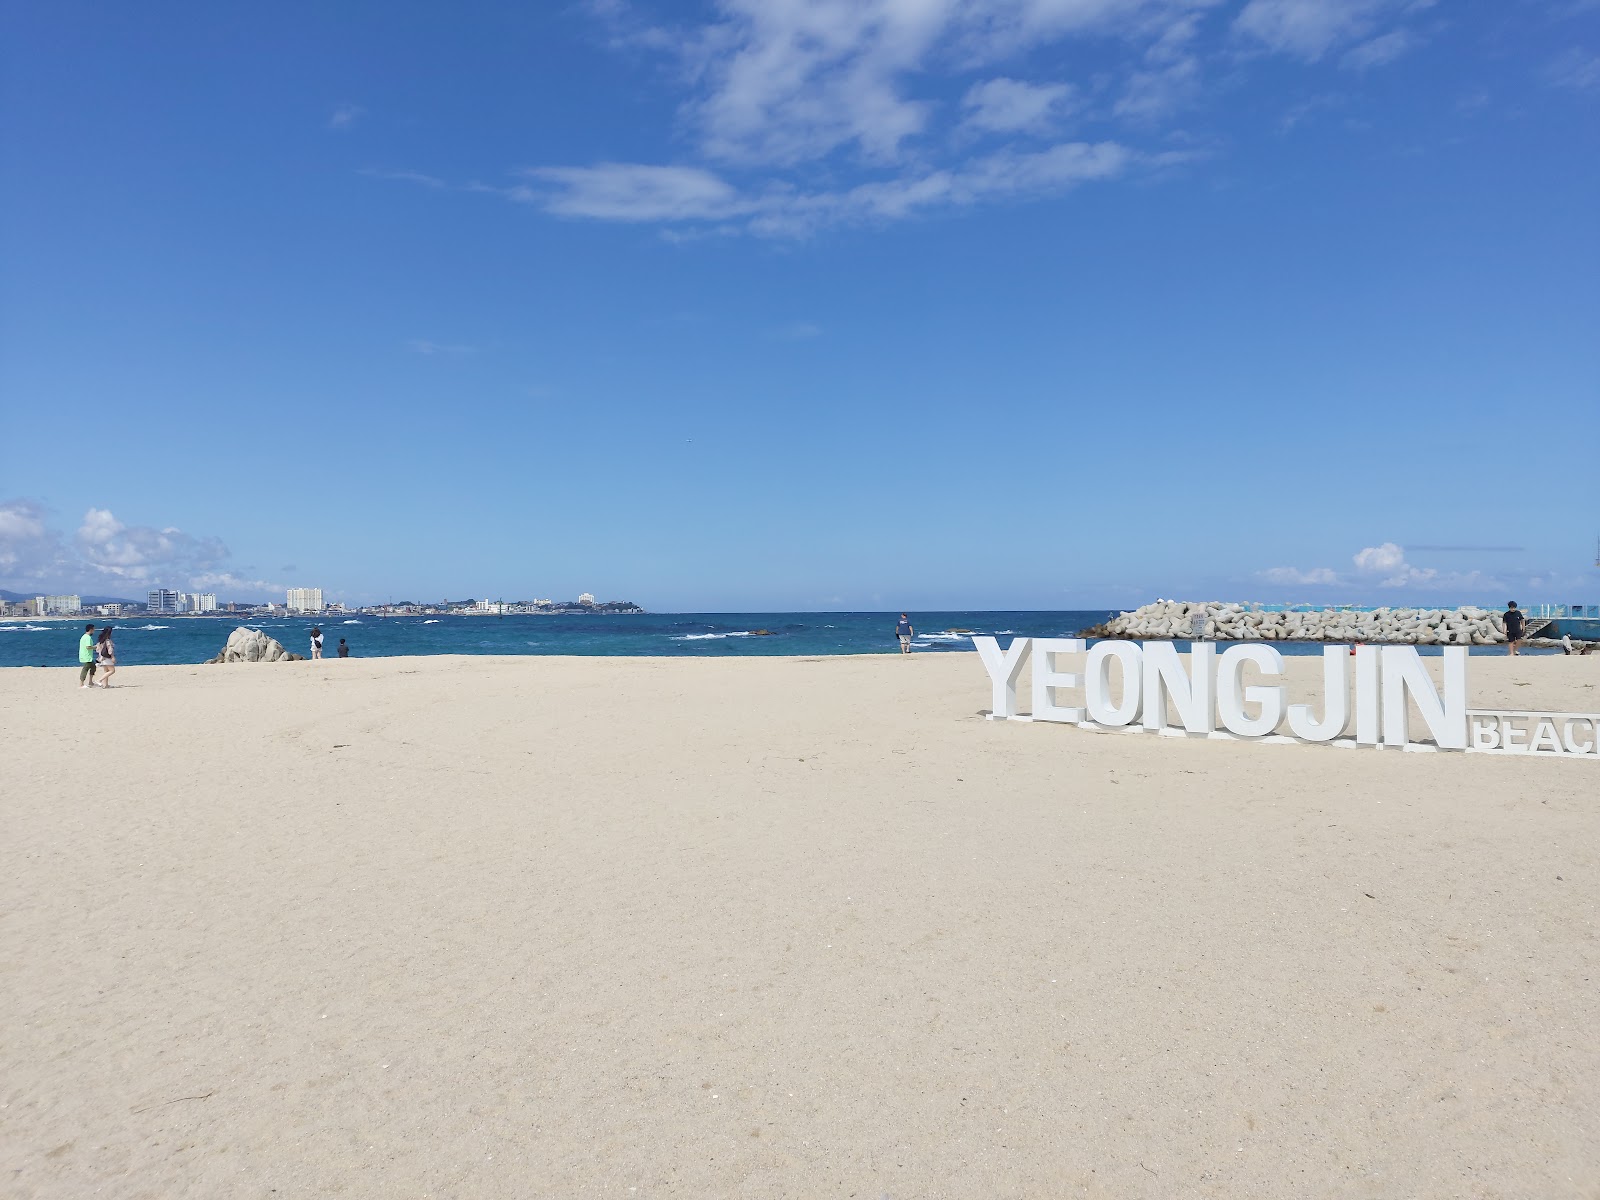 Yeongjin Beach'in fotoğrafı imkanlar alanı